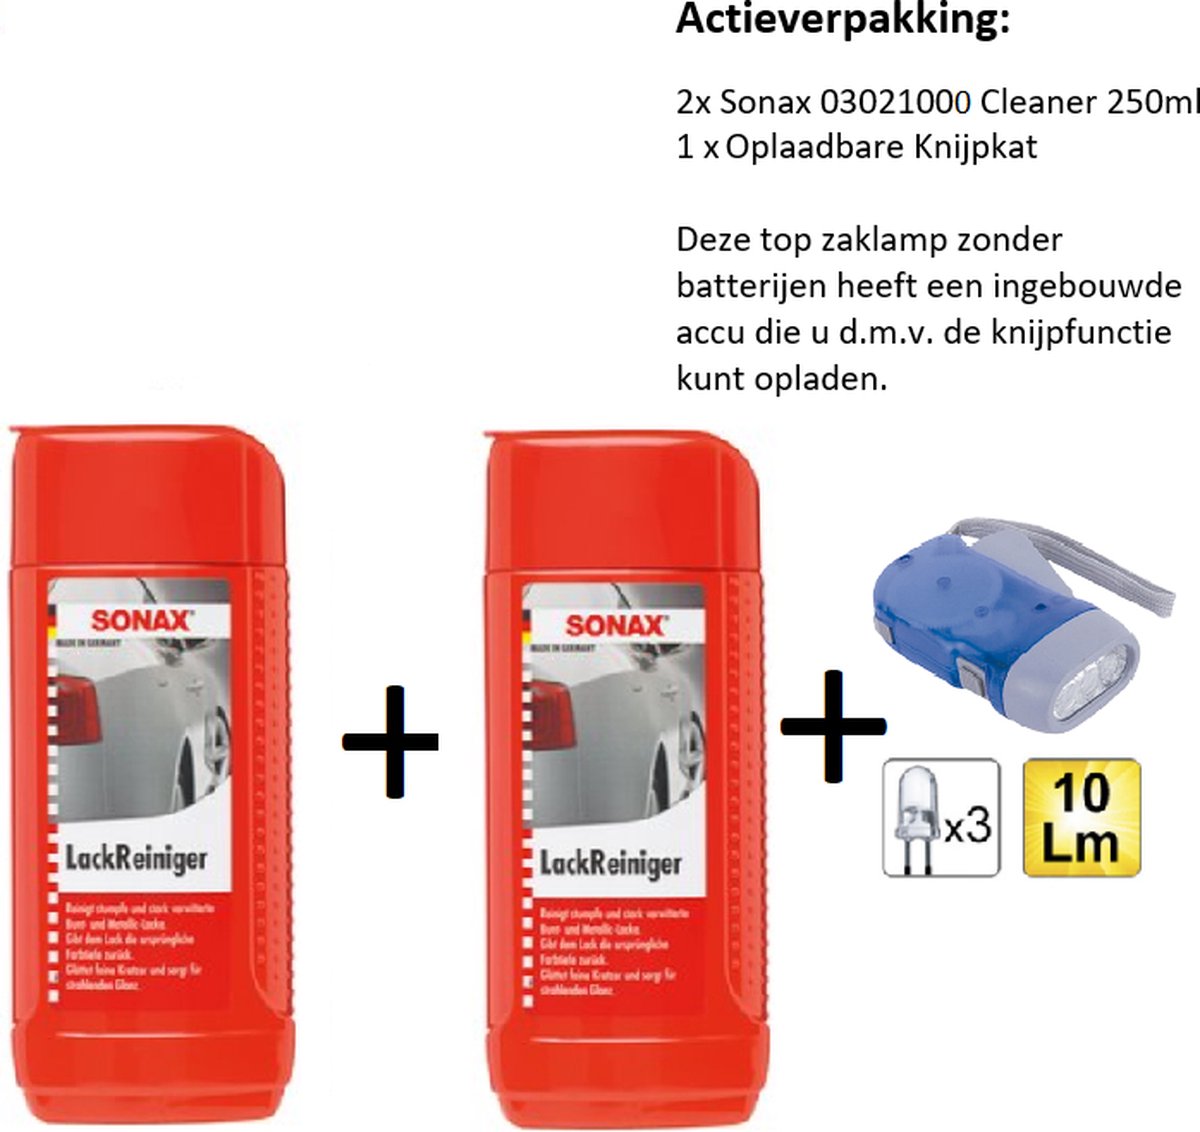 SONAX Cleaner 250ml - 2stuks + Zaklamp/Knijpkat